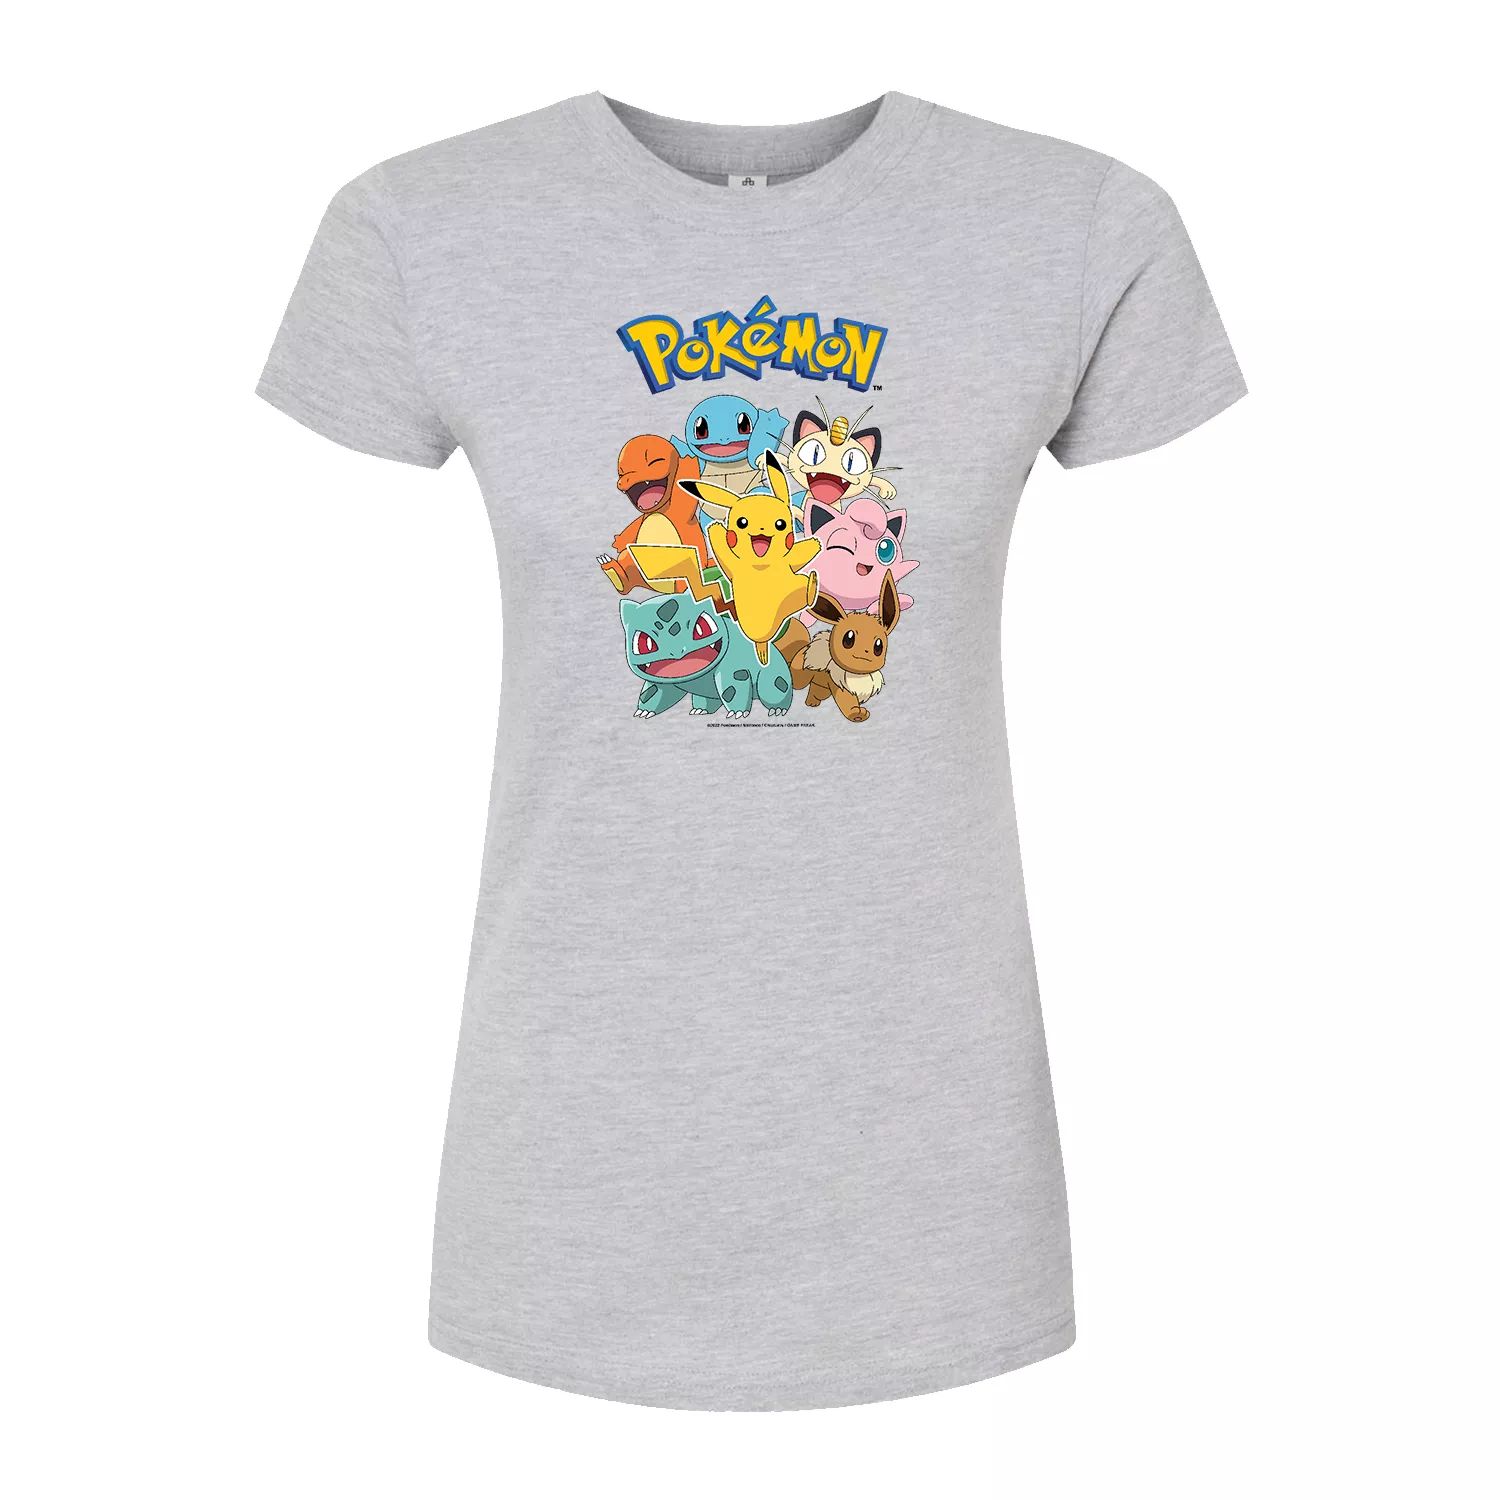 Облегающая футболка группы персонажей Pokémon для юниоров Licensed Character